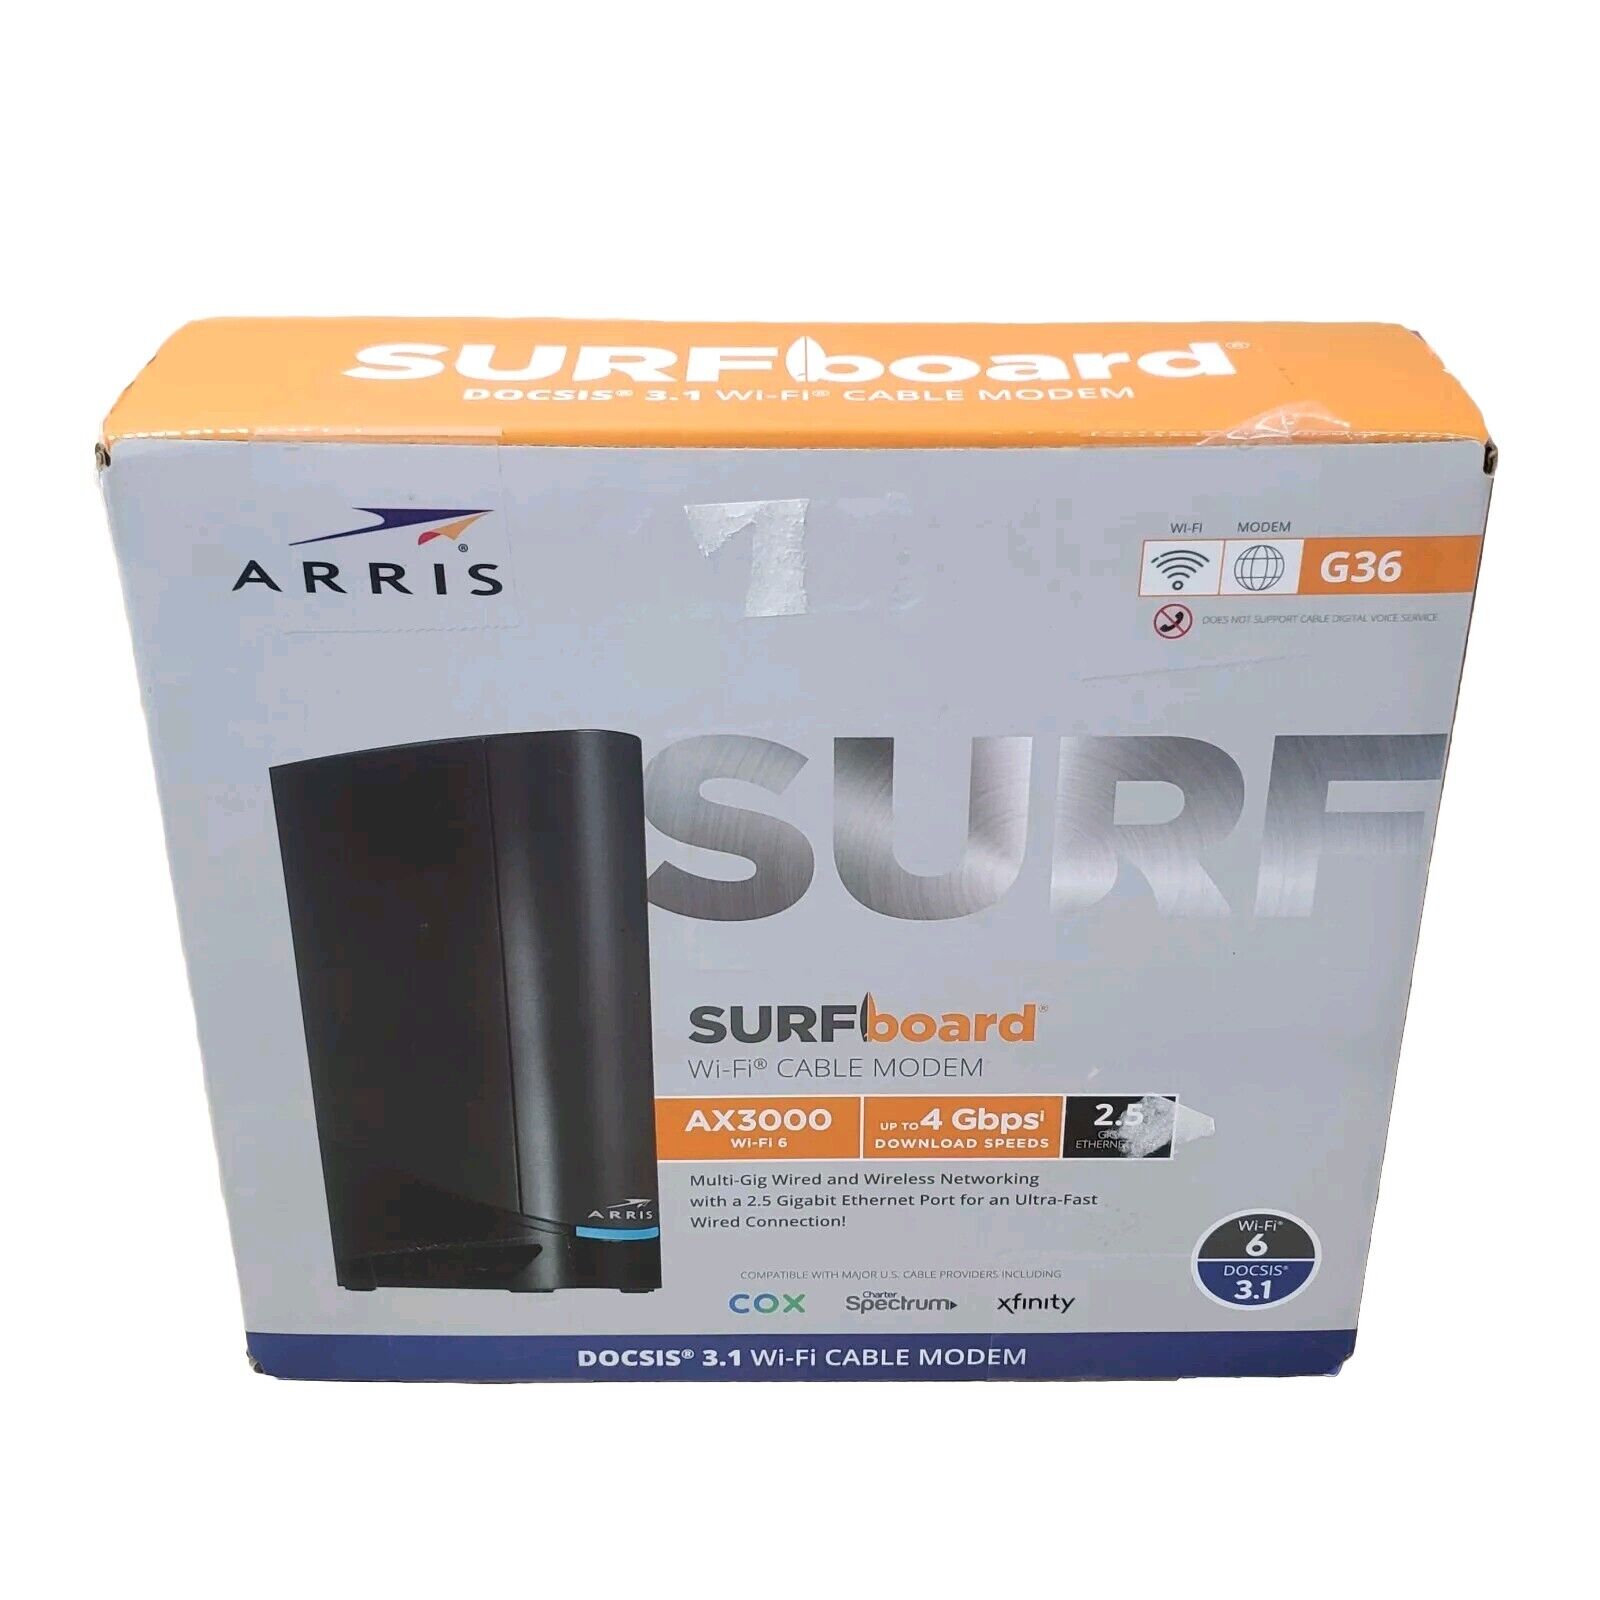 ARRIS Surfboard G36 DOCSIS 3.1 Multi-Gigabit Cable Modem